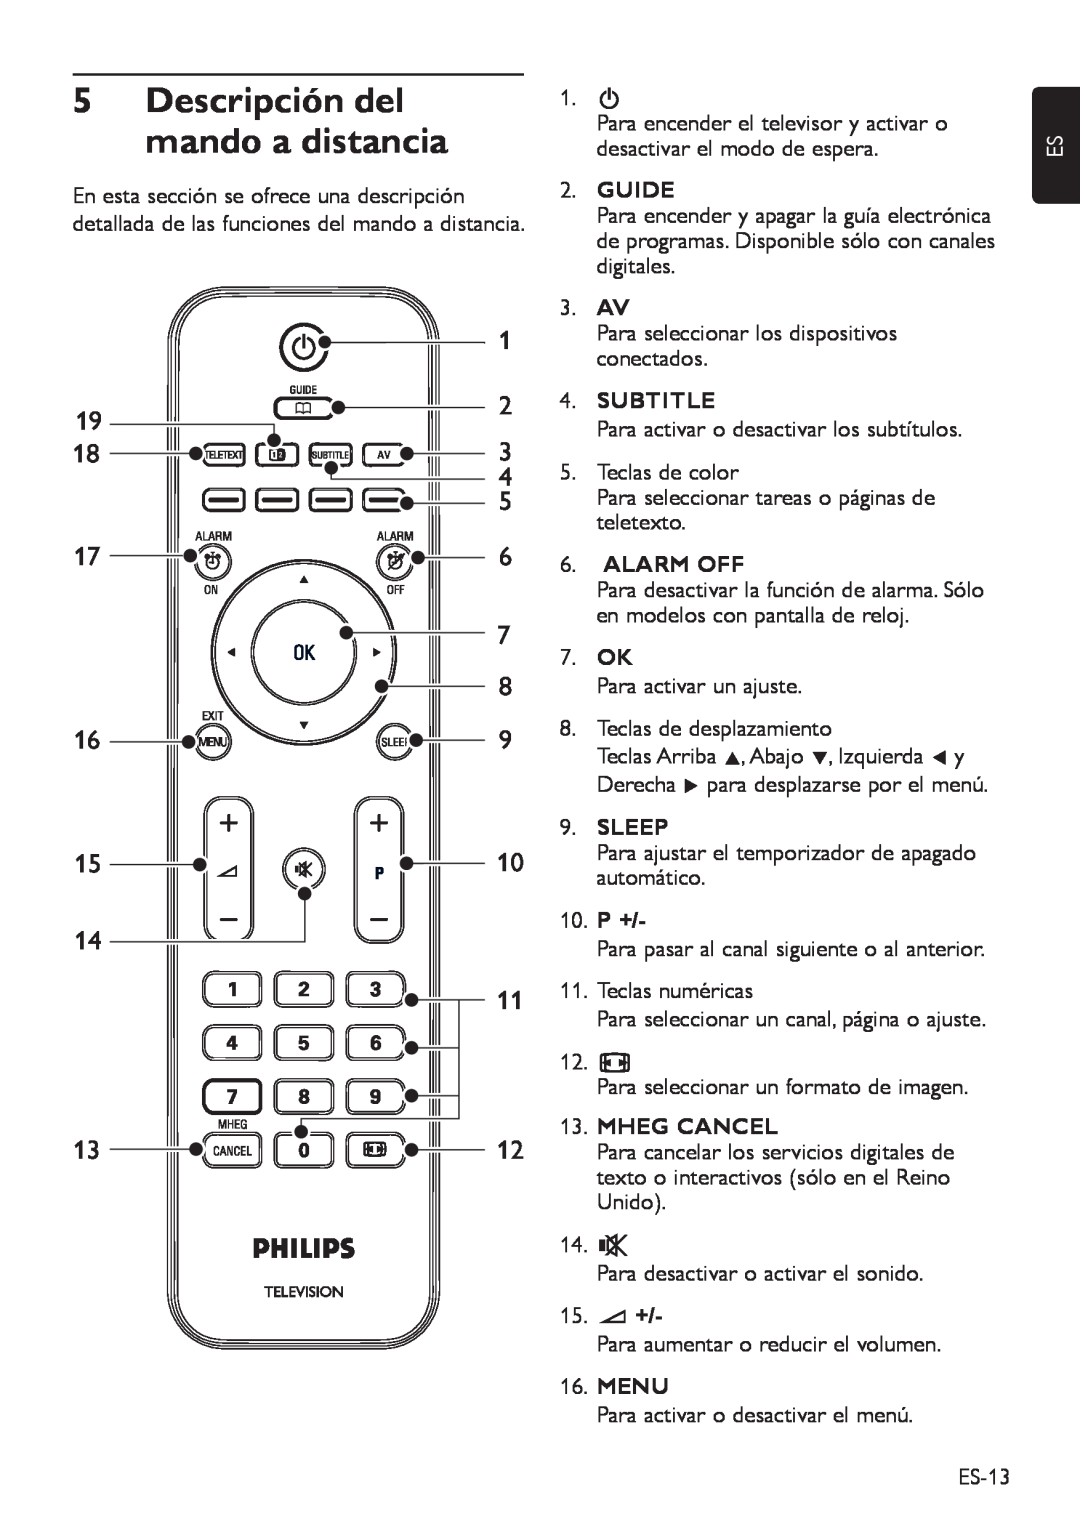 Philips DFU-DEC2008 manual Descripción del, mando a distancia, Guide, Subtitle, Alarm Off, Sleep, Mheg Cancel, 15.” +, Menu 